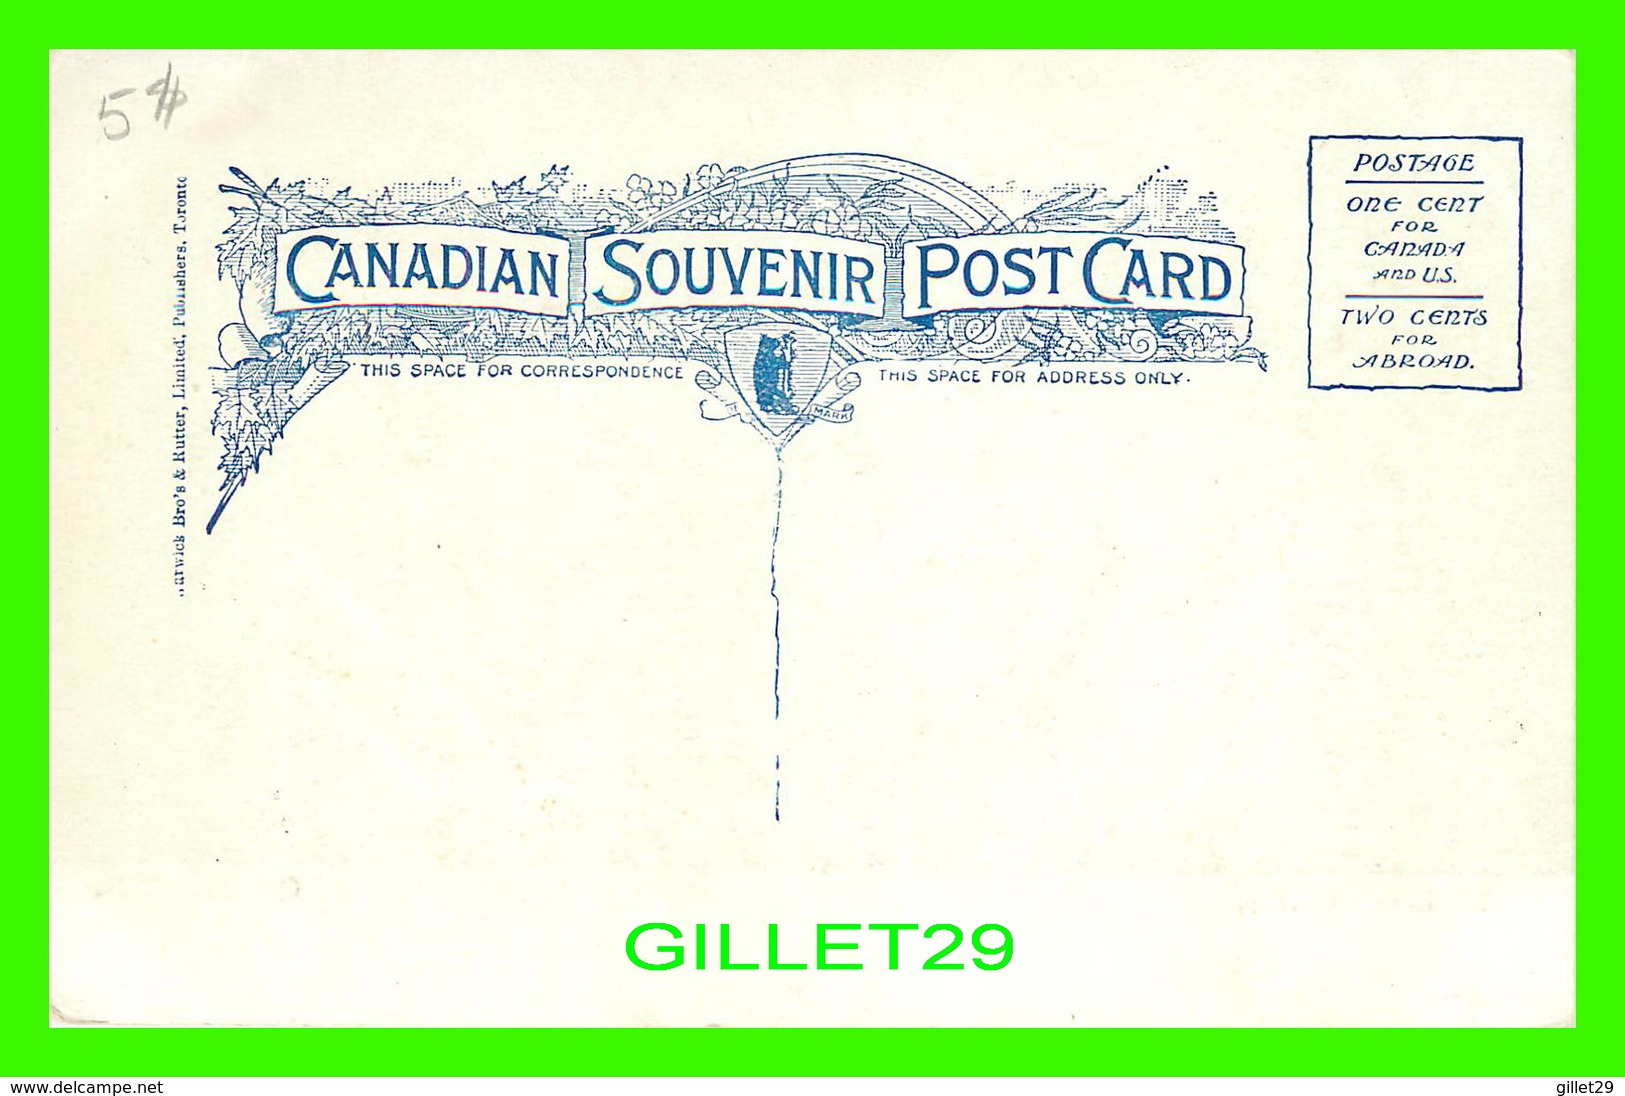 QUÉBEC - LA PORTE ST LOUIS - ST LOUIS GATE - ANIMATED WITH TRAMWAYS - CANADIAN SOUVENIR POST CARD - WARWICK BRO'S - - Québec – Les Portes